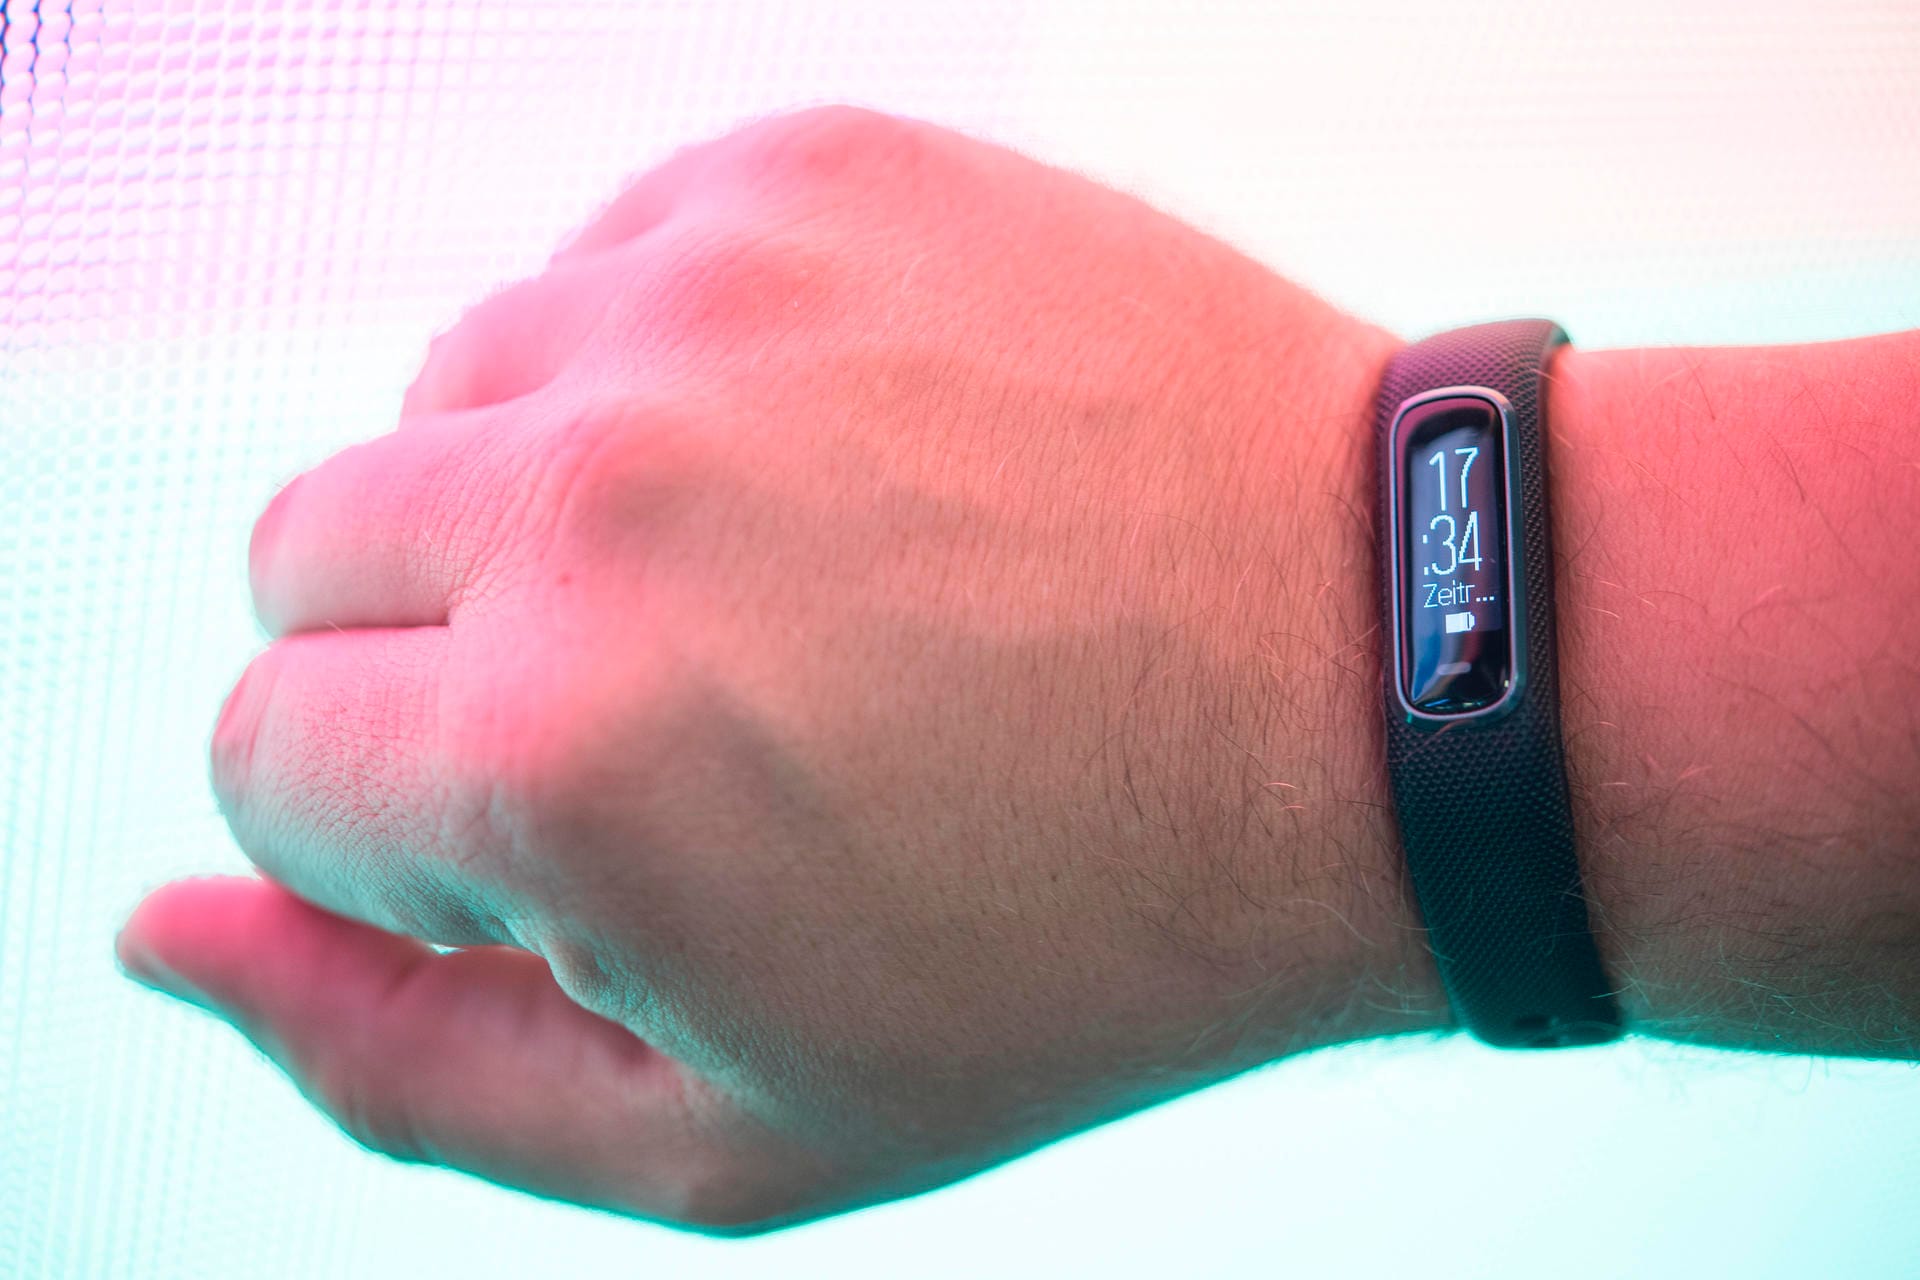 Die neue Vivosmart 4 von Garmin: Die Smartwatch des Herstellers von Navigations-Empfängern gibt ihrem Träger Tipps zum Training und zur Bewegung im Alltag.